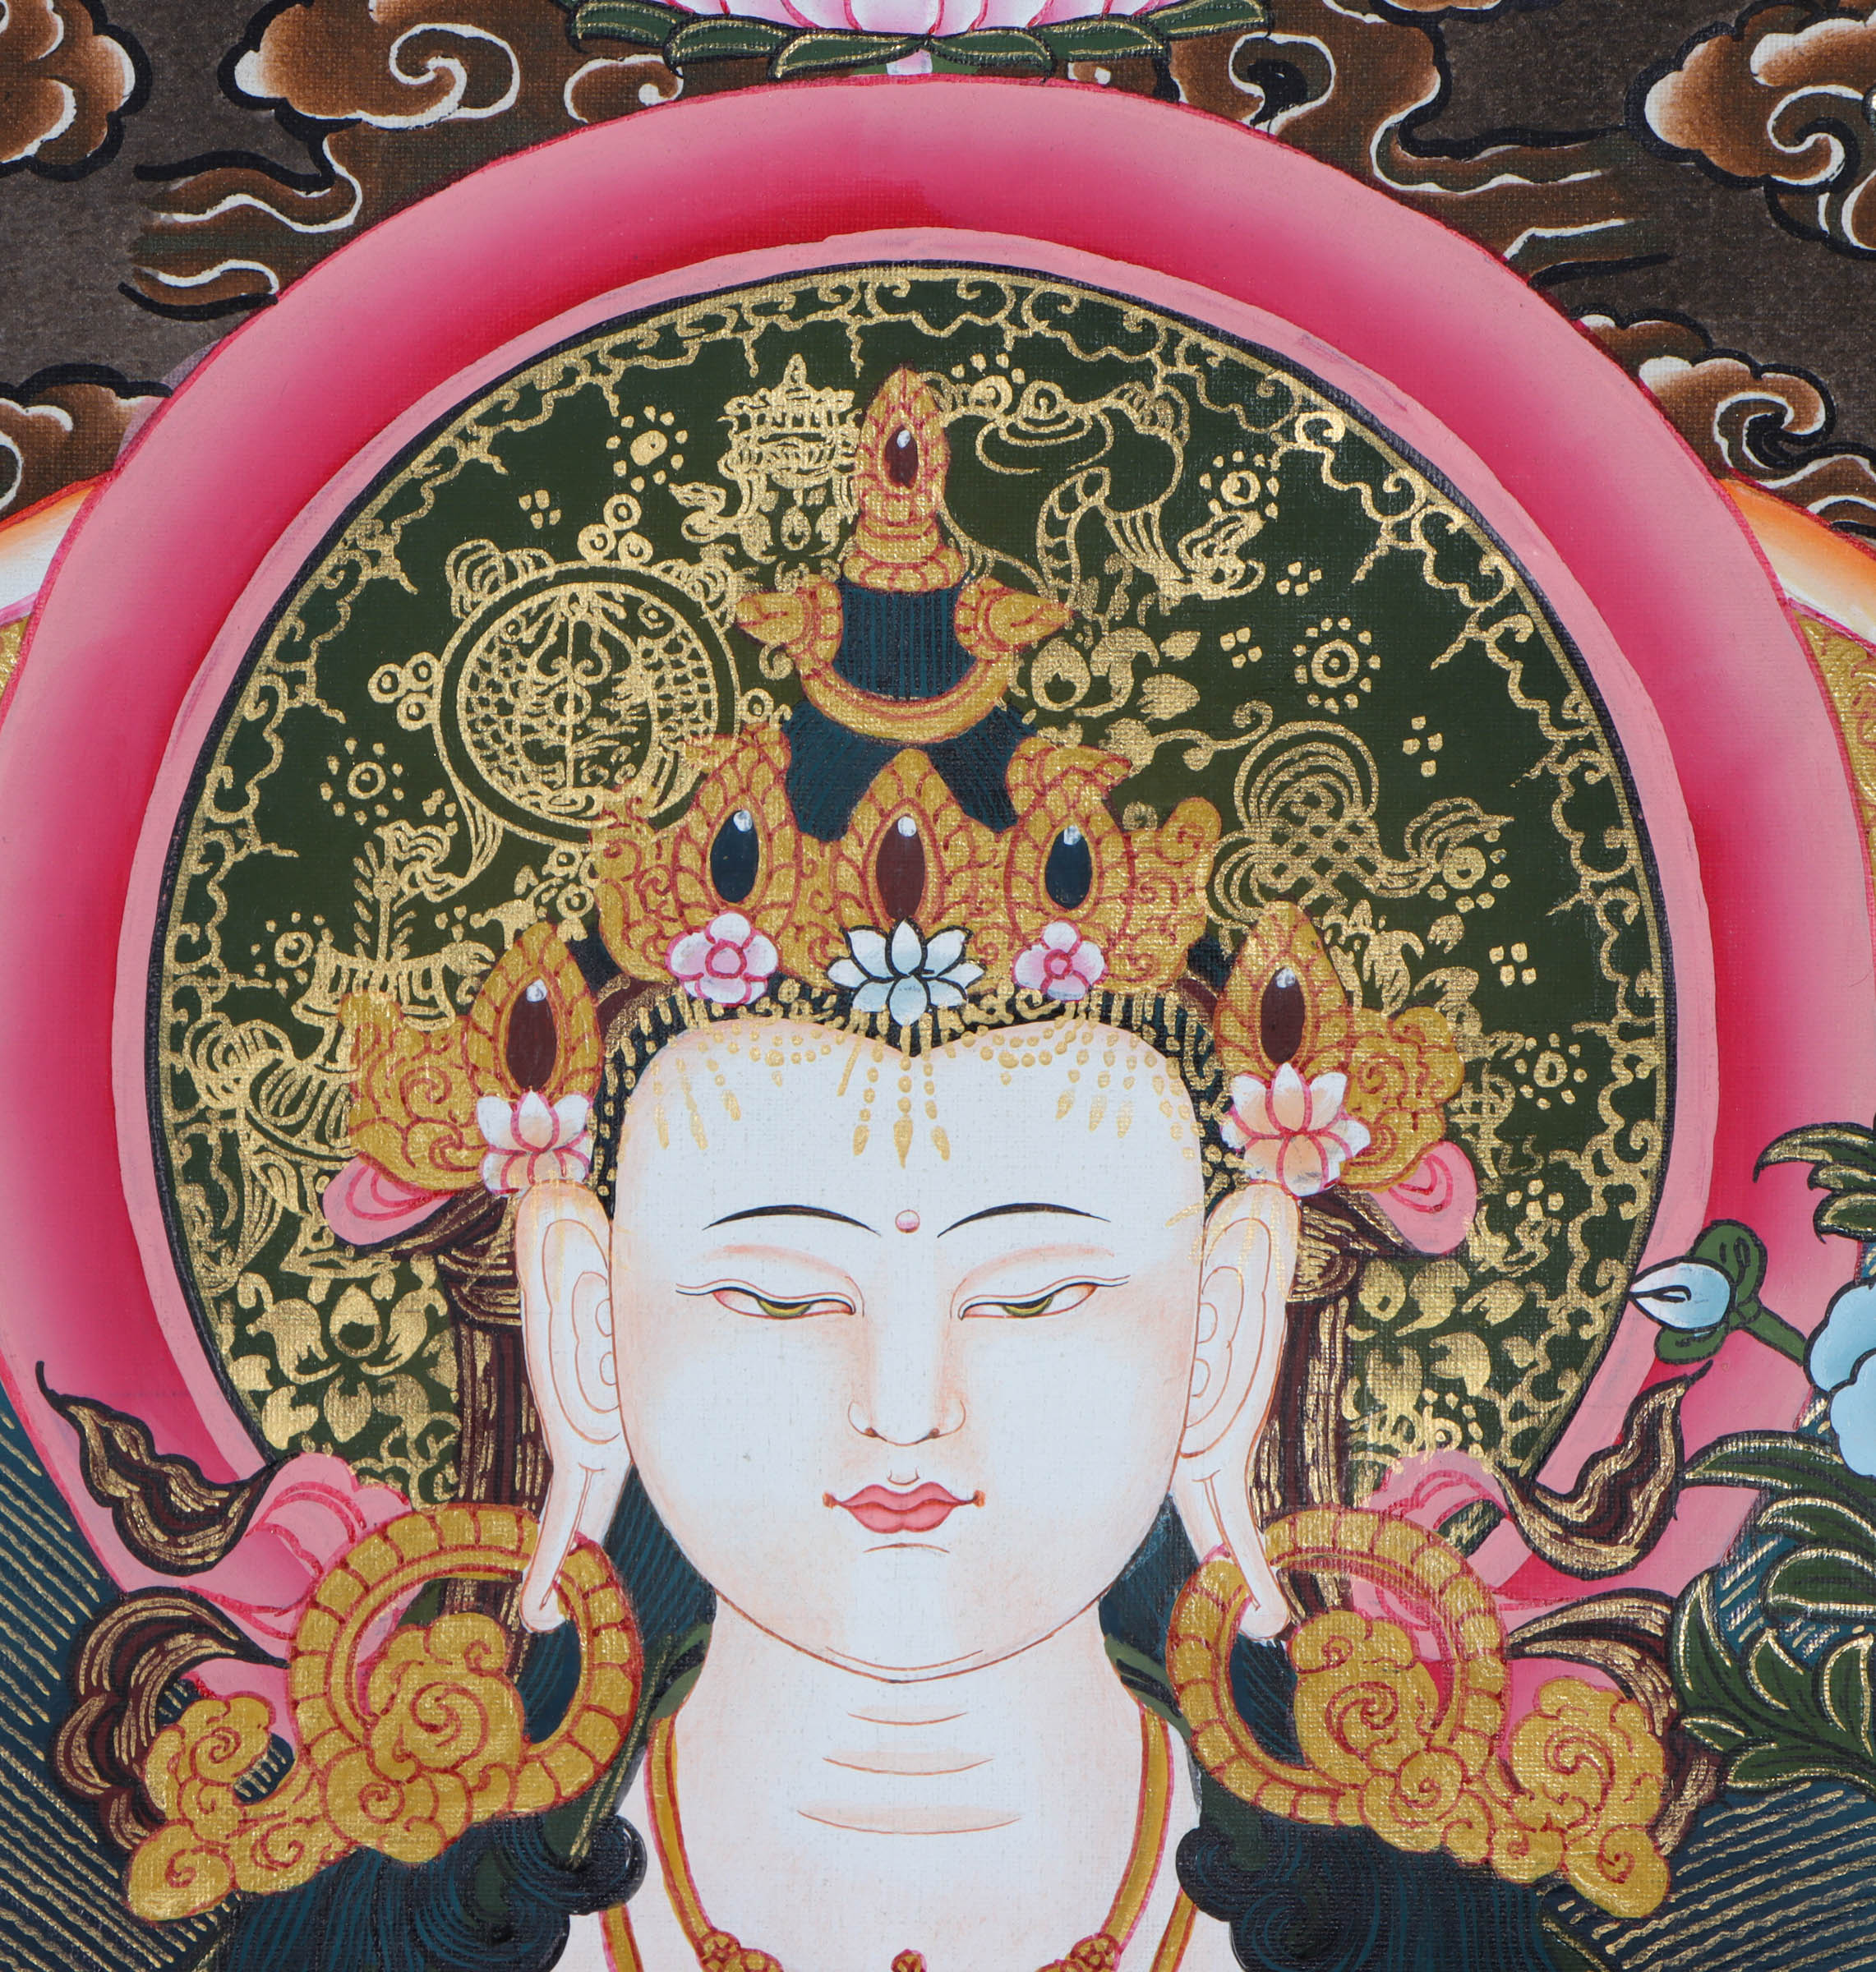 Chengresi (Bodhisattva) Thangka Painting - Himalayas Shop